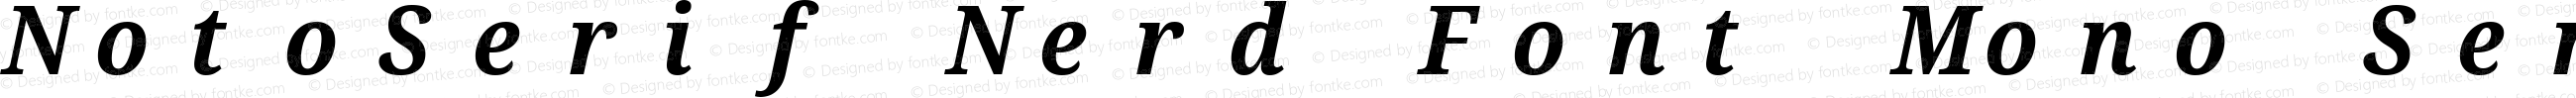 Noto Serif SemiCondensed Bold Italic Nerd Font Complete Mono